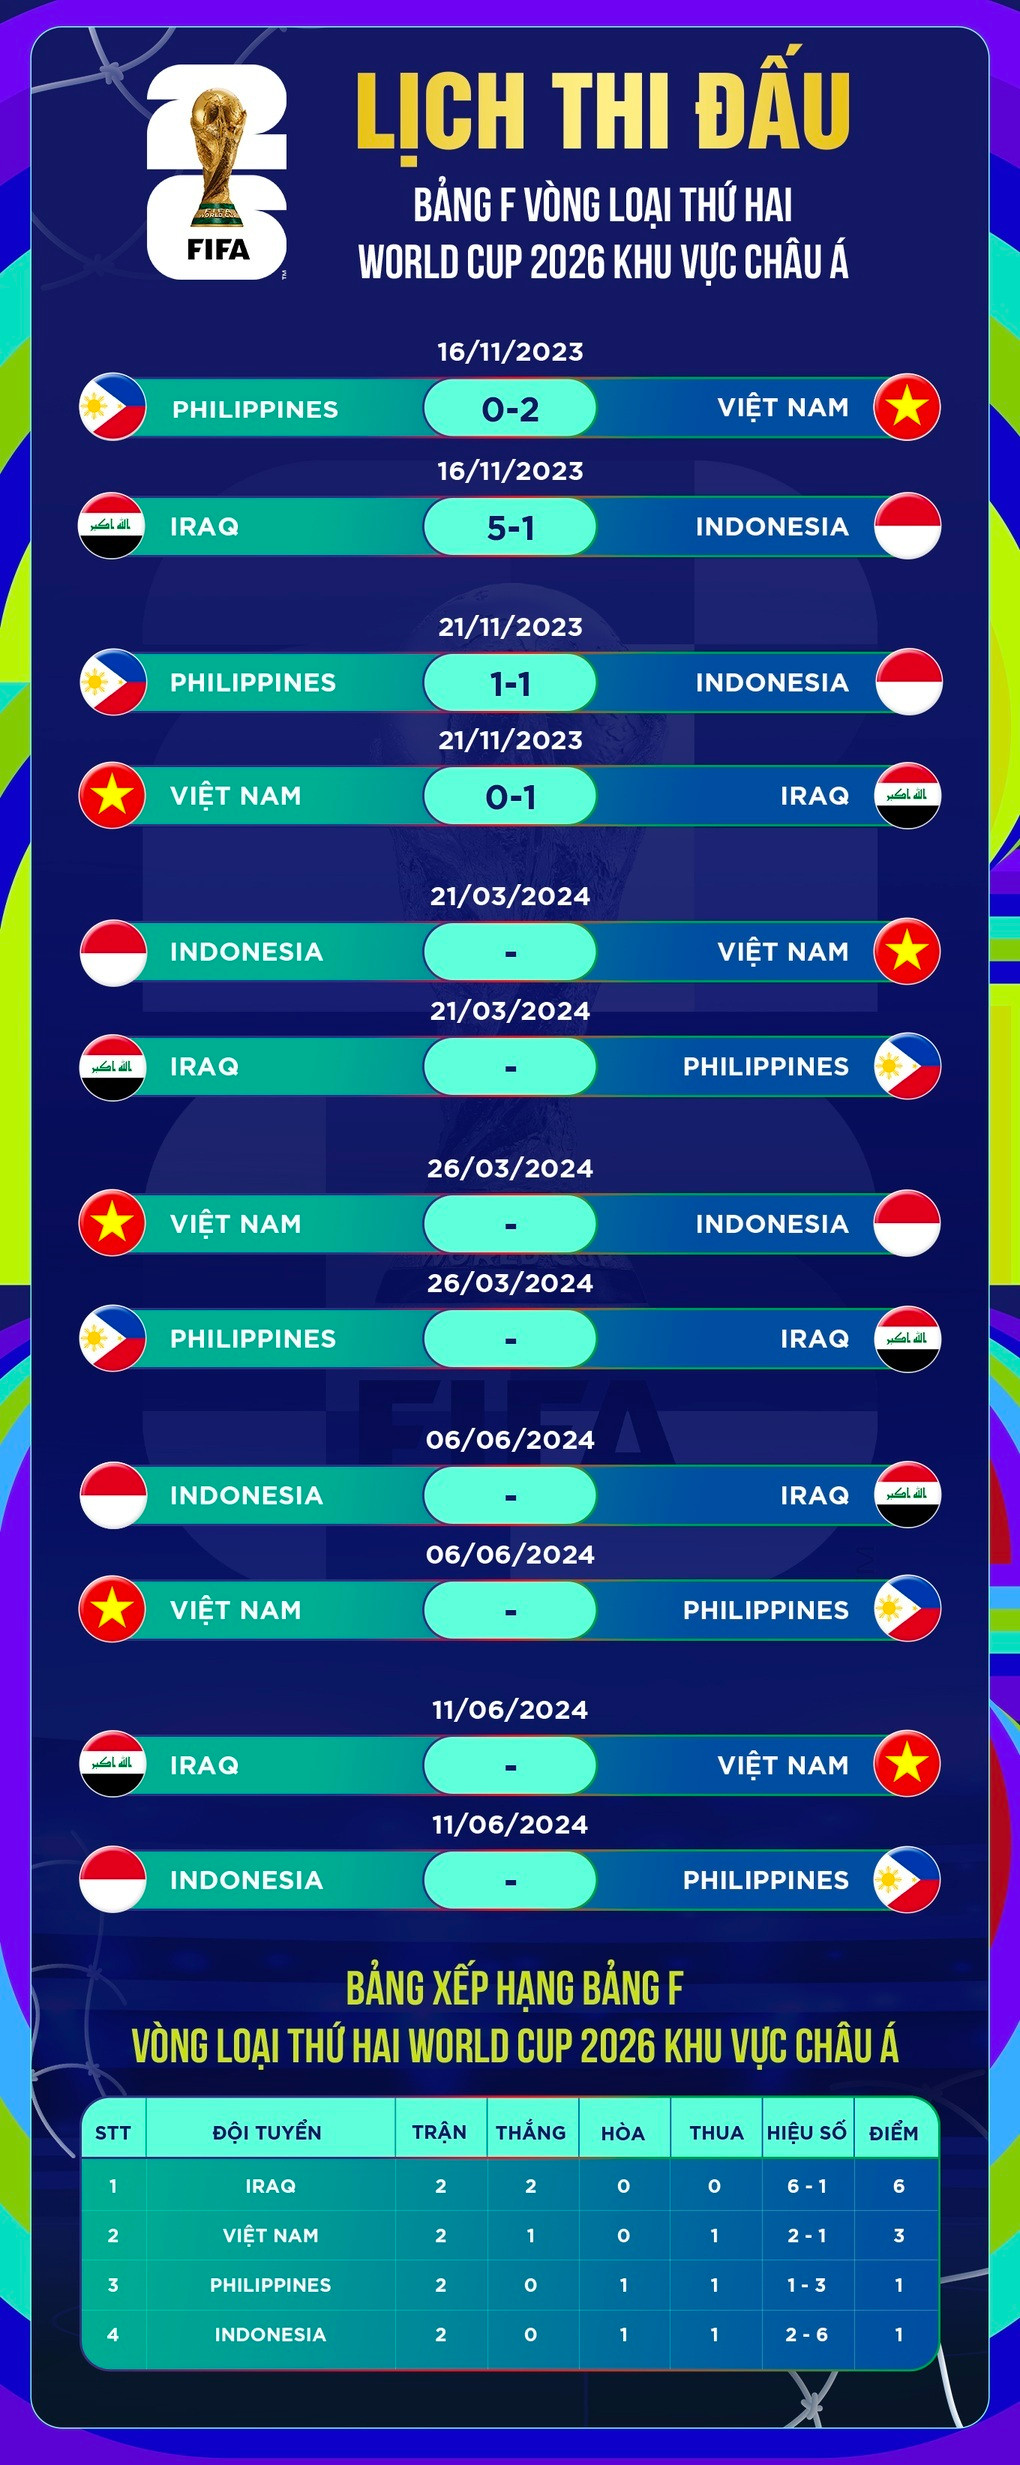 Sức nóng trận tuyển Việt Nam gặp Indonesia tăng cao, vé đắt không có để mua - 3